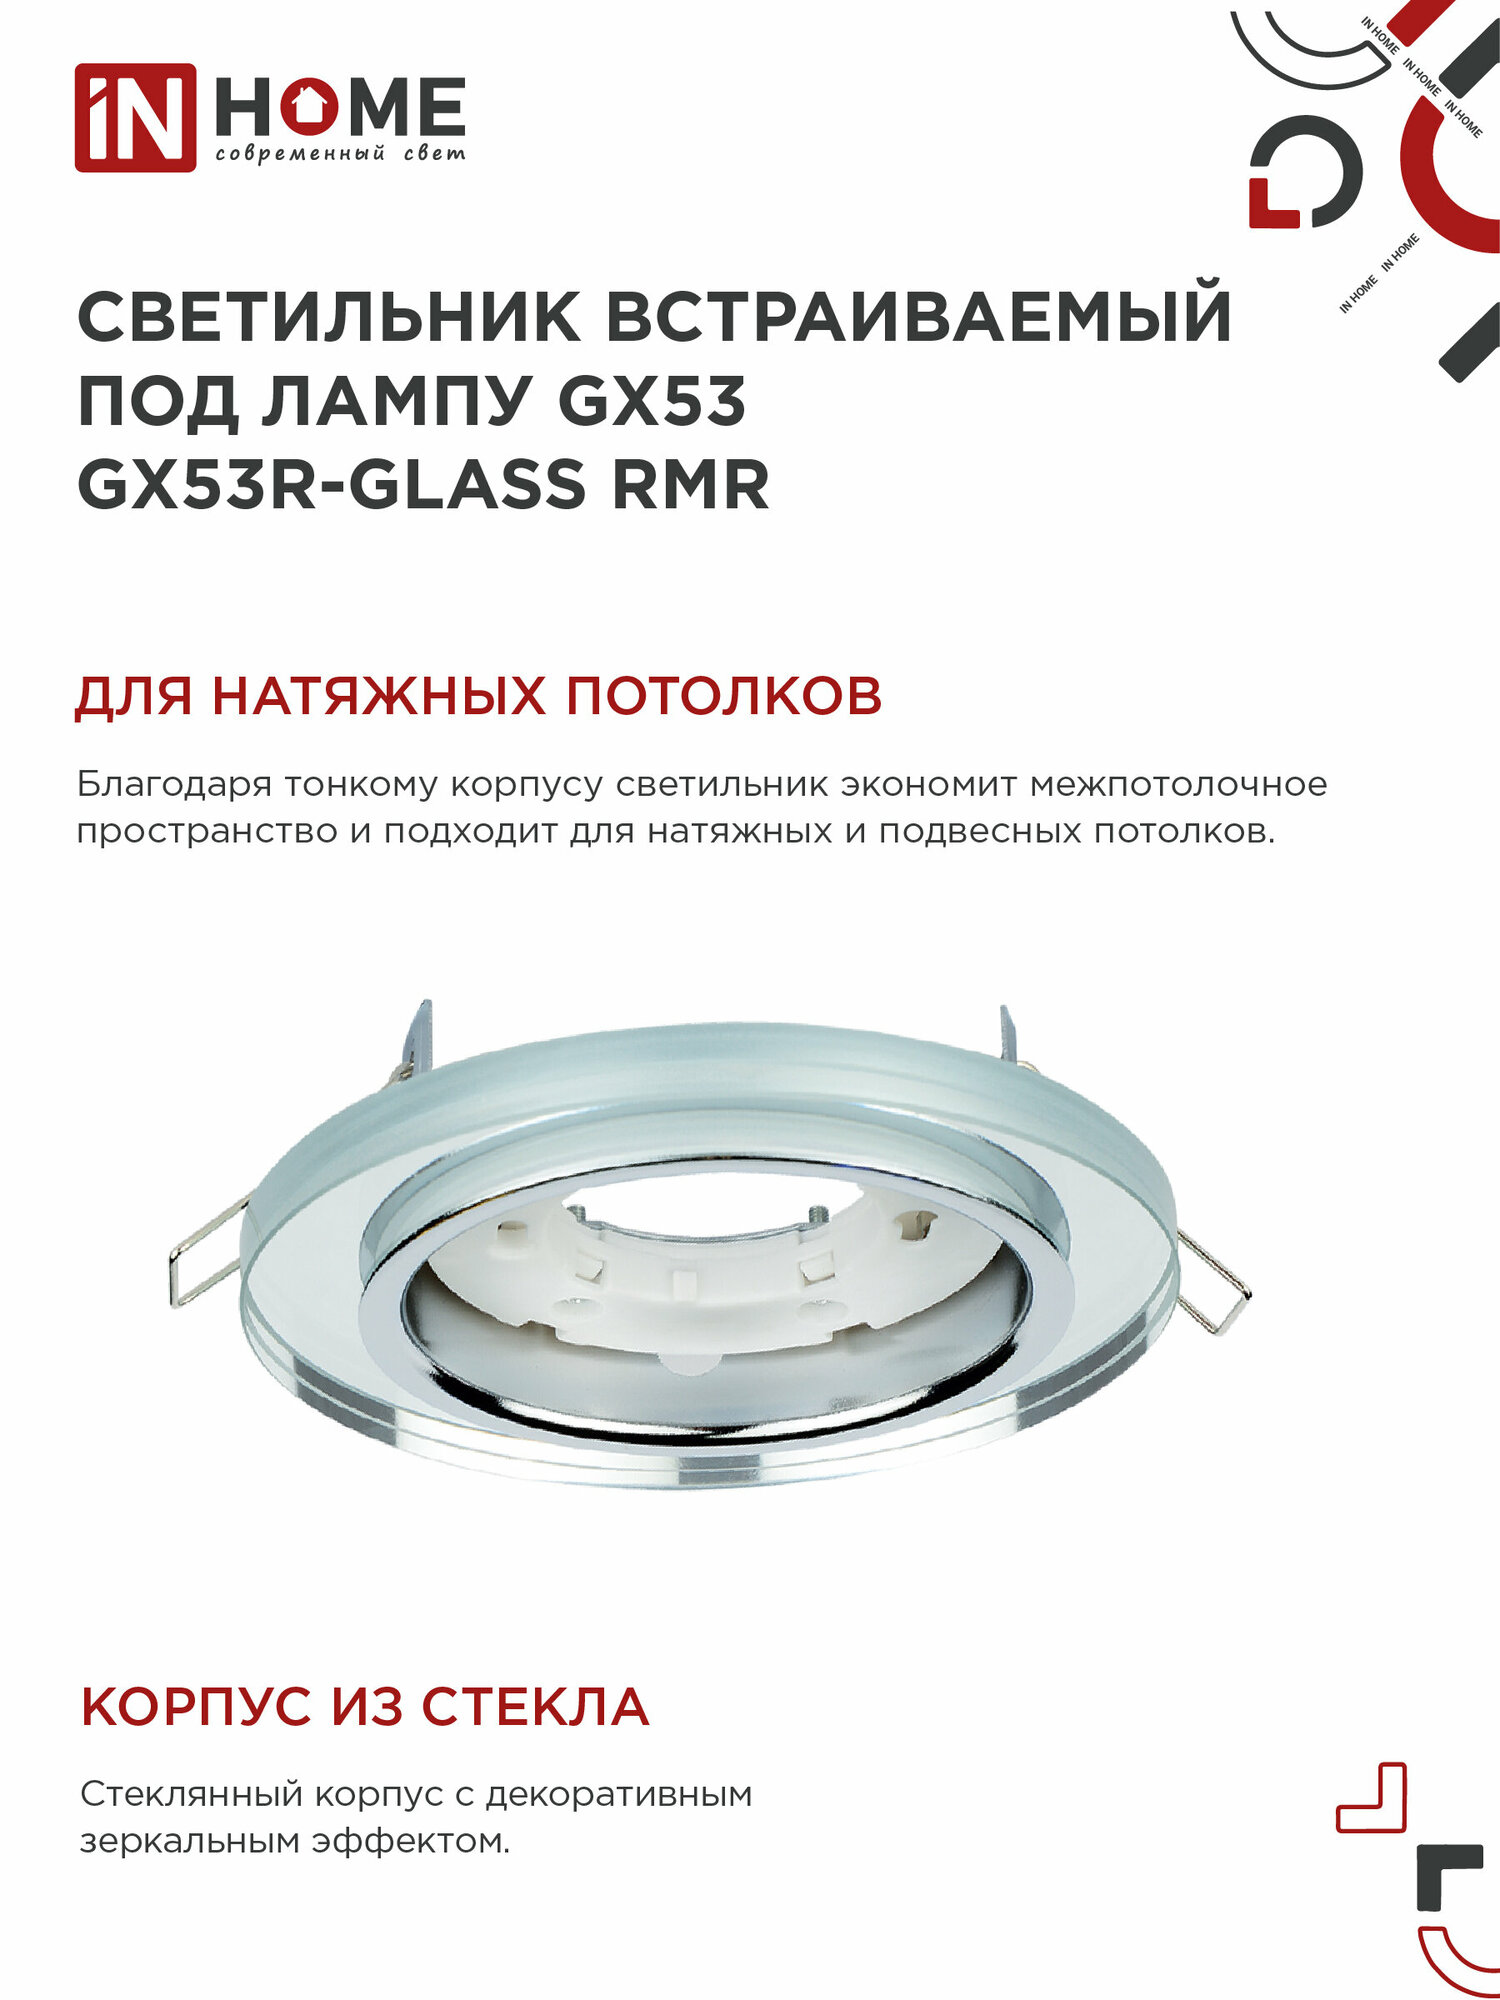 Светильник встраиваемый точечный GX53R-glass RMR круг под GX53 зеркальный IN HOME